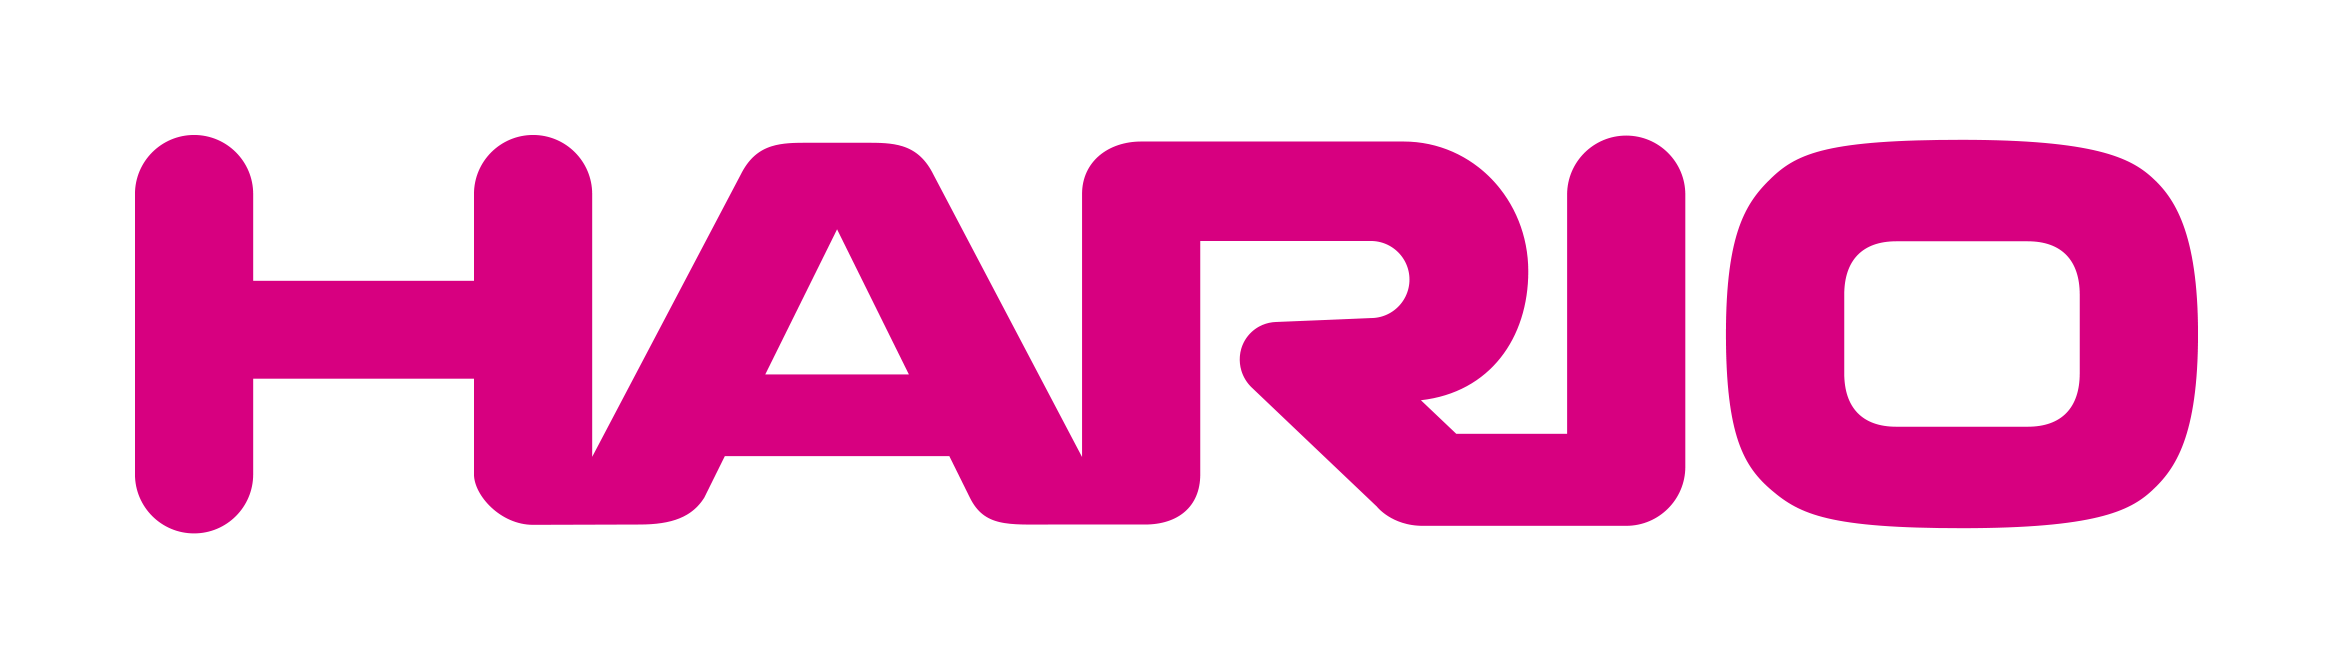 hario-logo